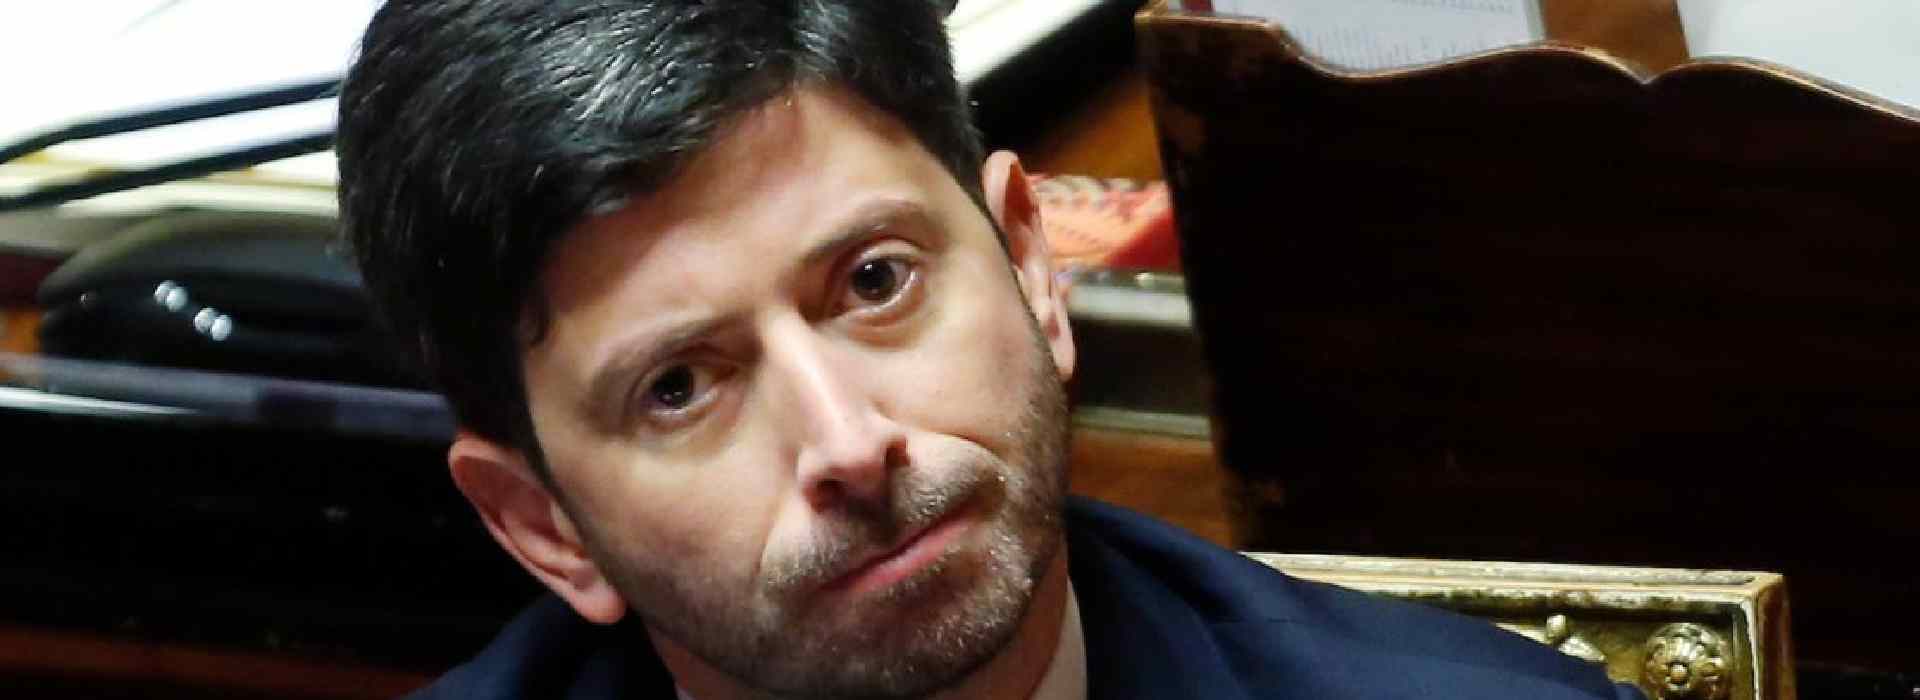 Roberto Speranza continua a nascondere documenti: un ministro sempre più in bilico (e bugiardo)